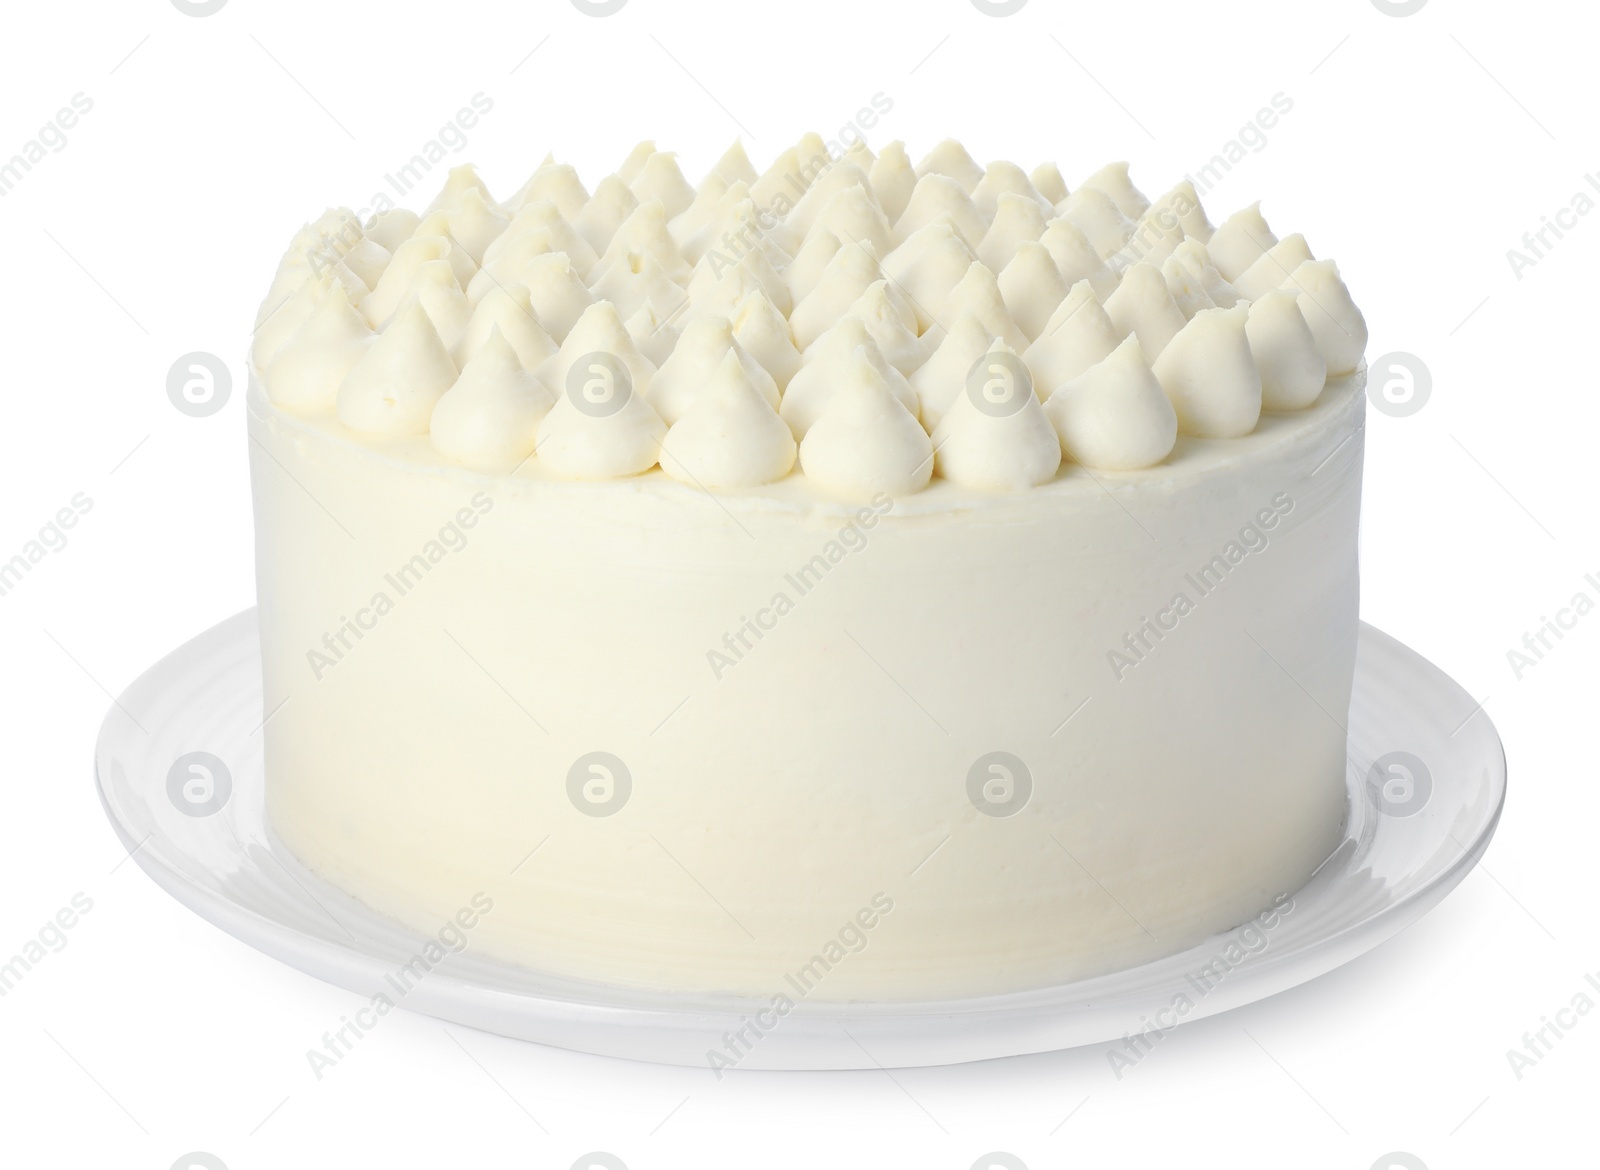 Photo of One delicious tiramisu cake isolated on white